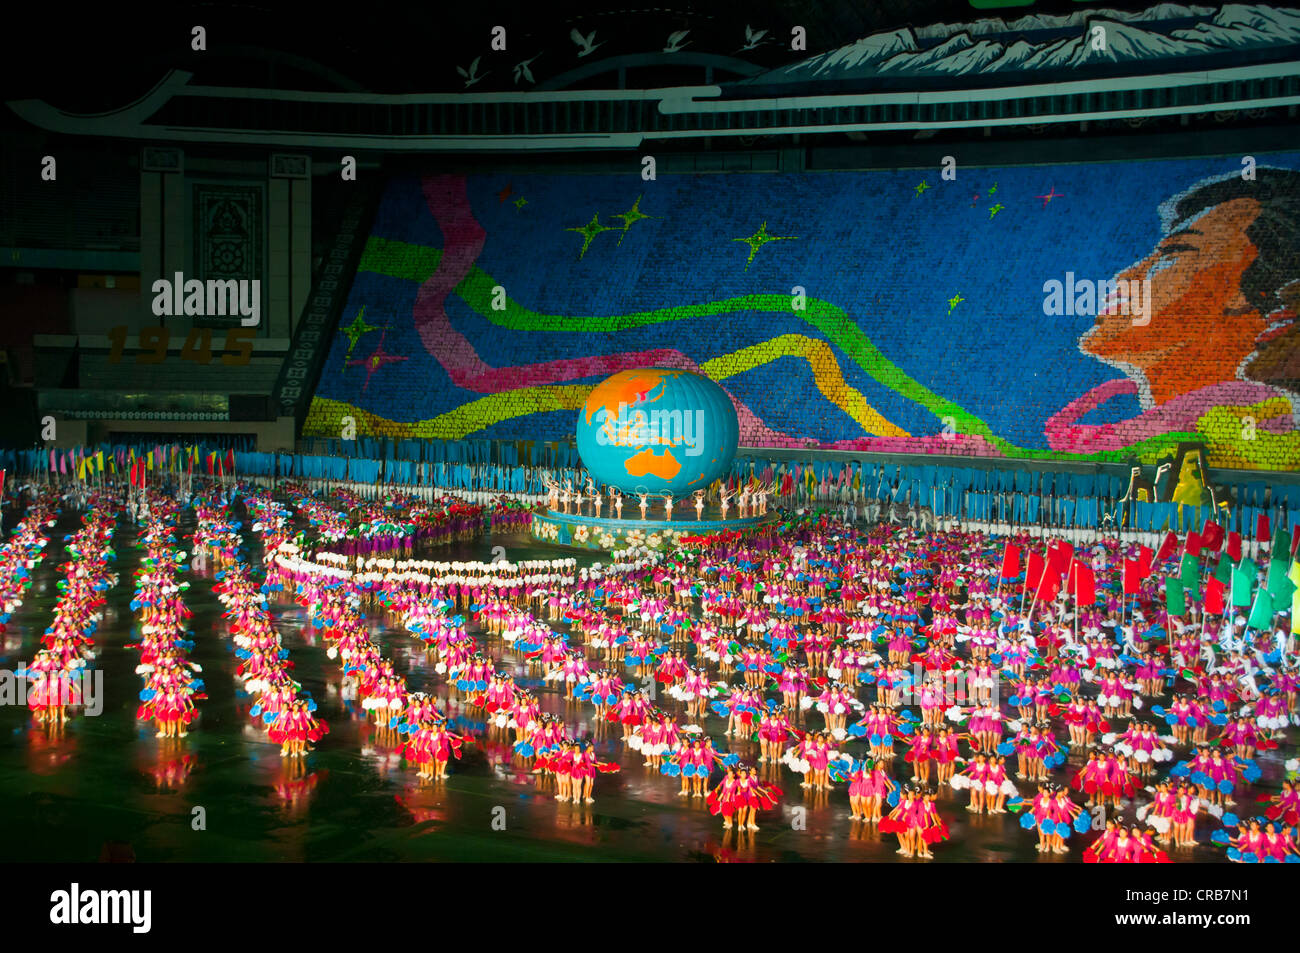 Danseurs et acrobates à l'Arirang Festival, le Grand nord-coréen et de Gymnastique de masse Performance artistique, Pyongyang Banque D'Images